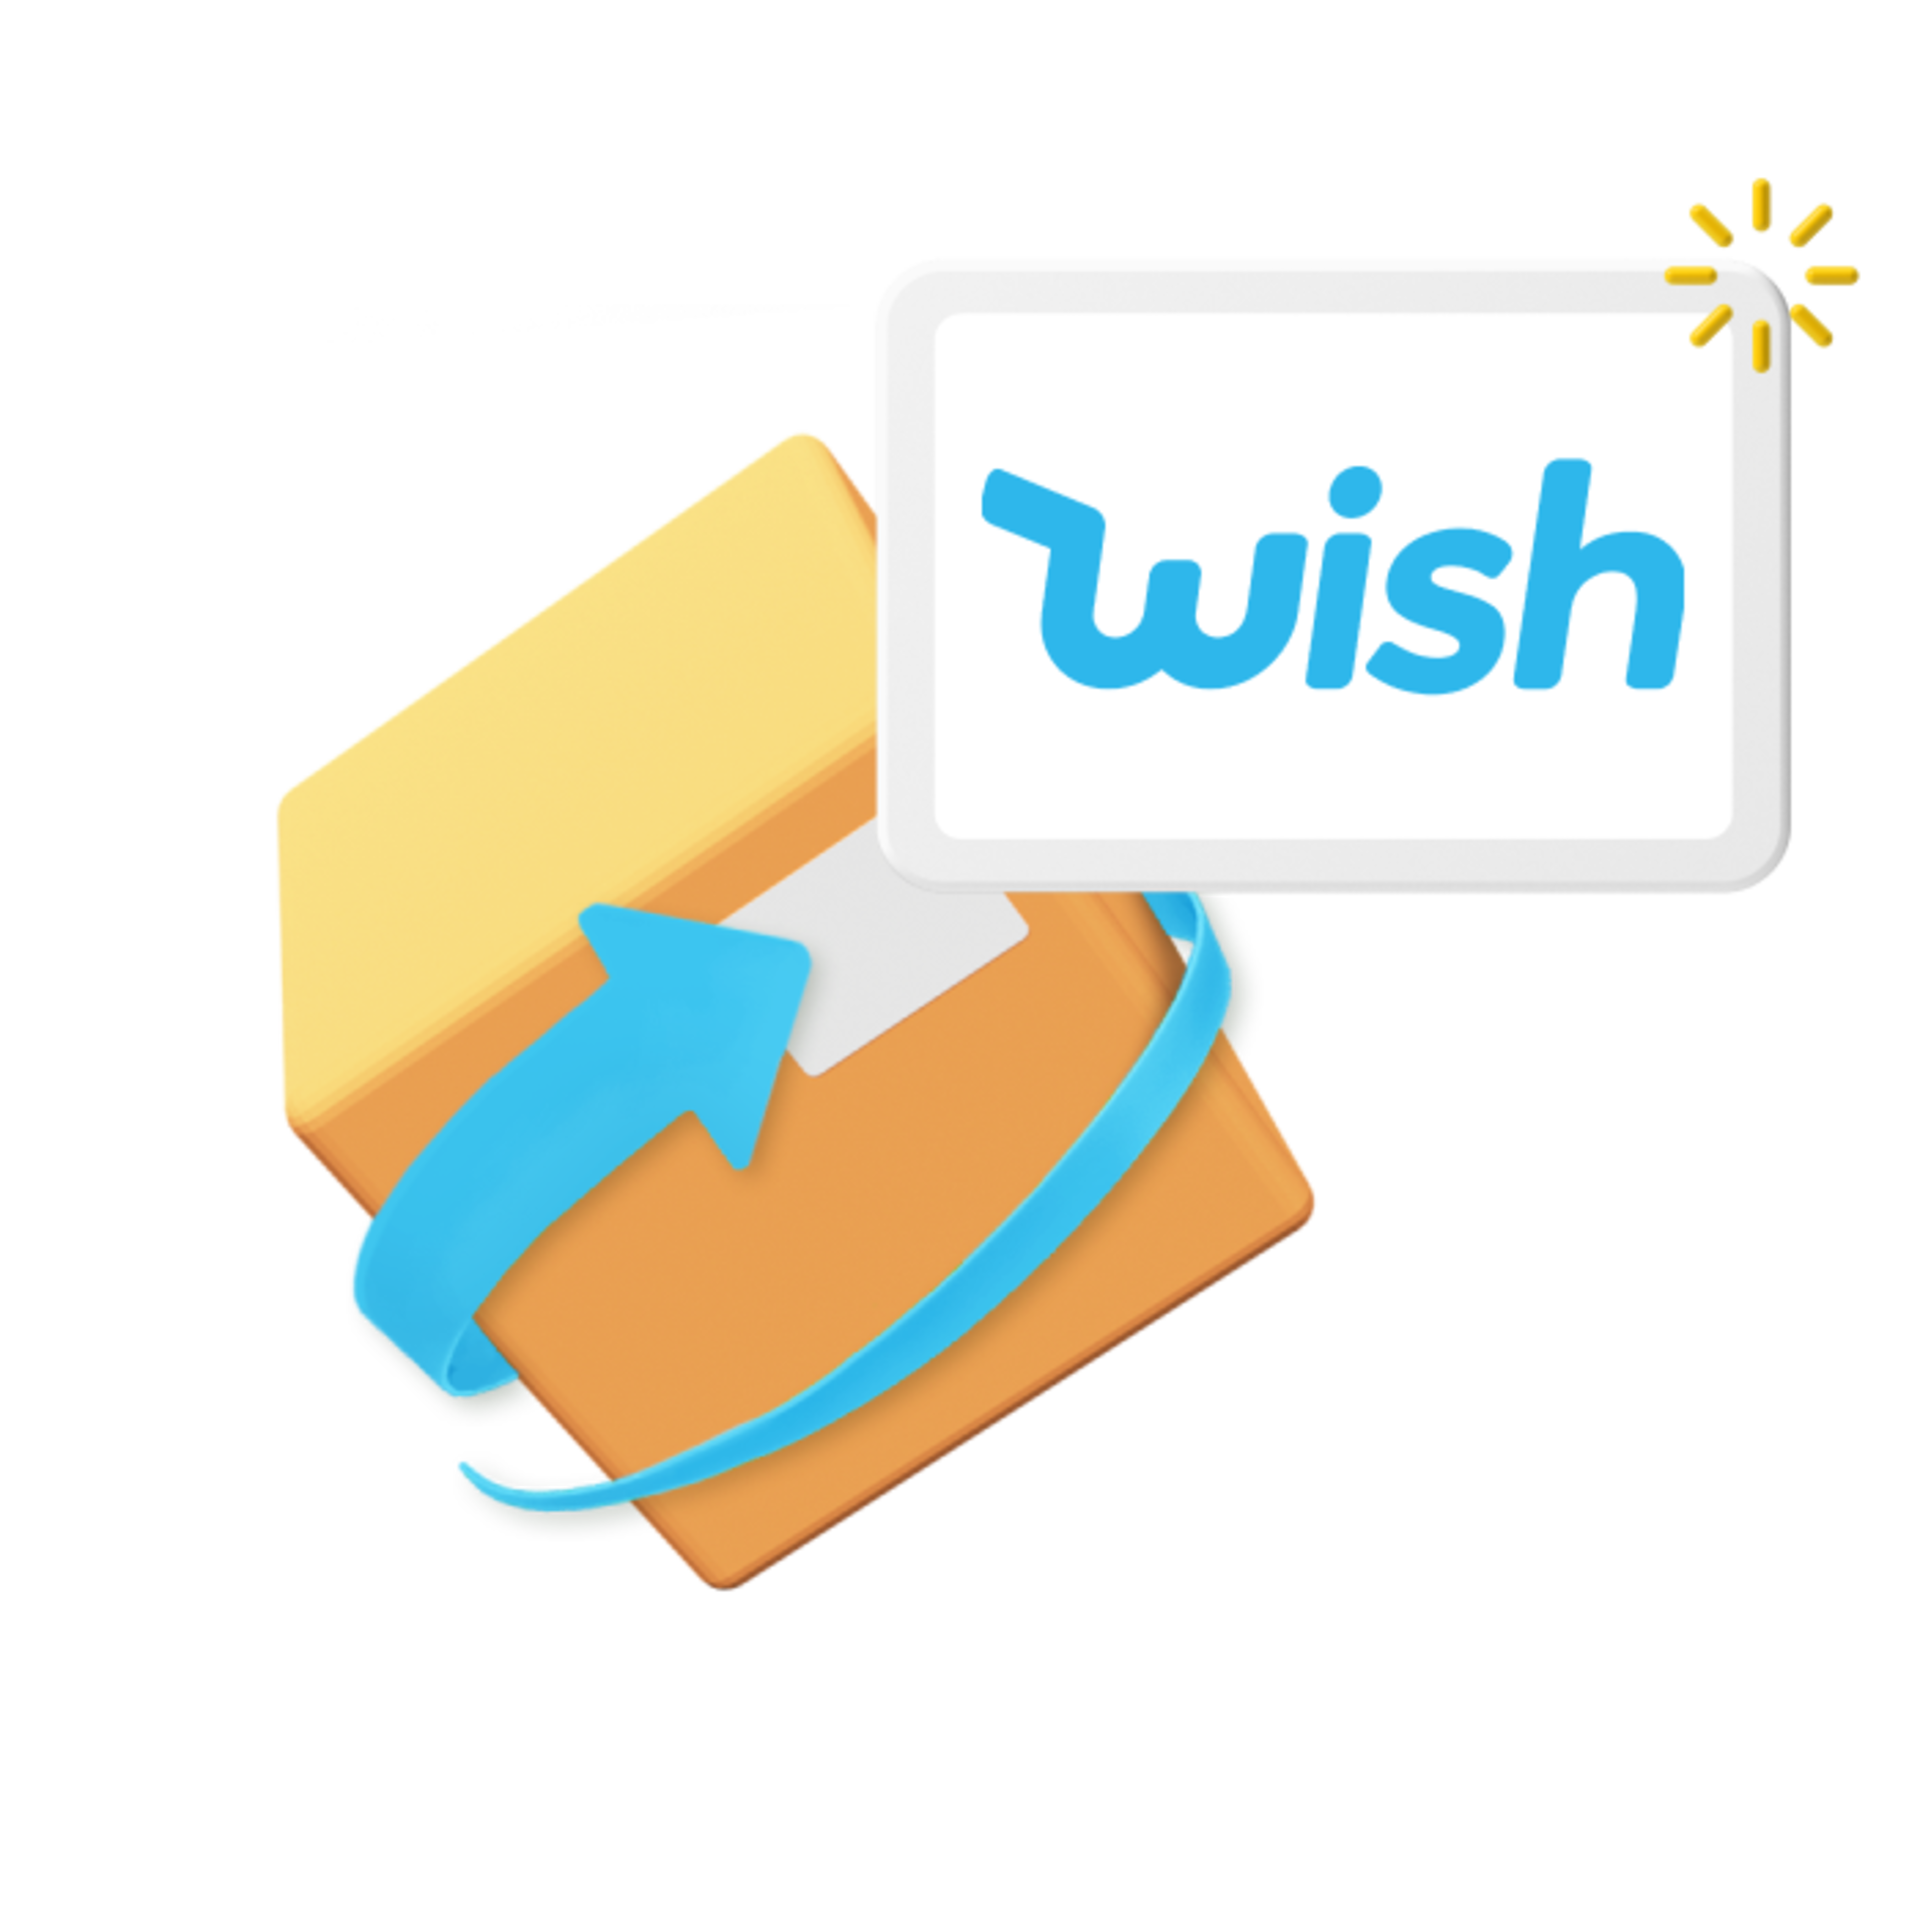 Wish marketplace logo